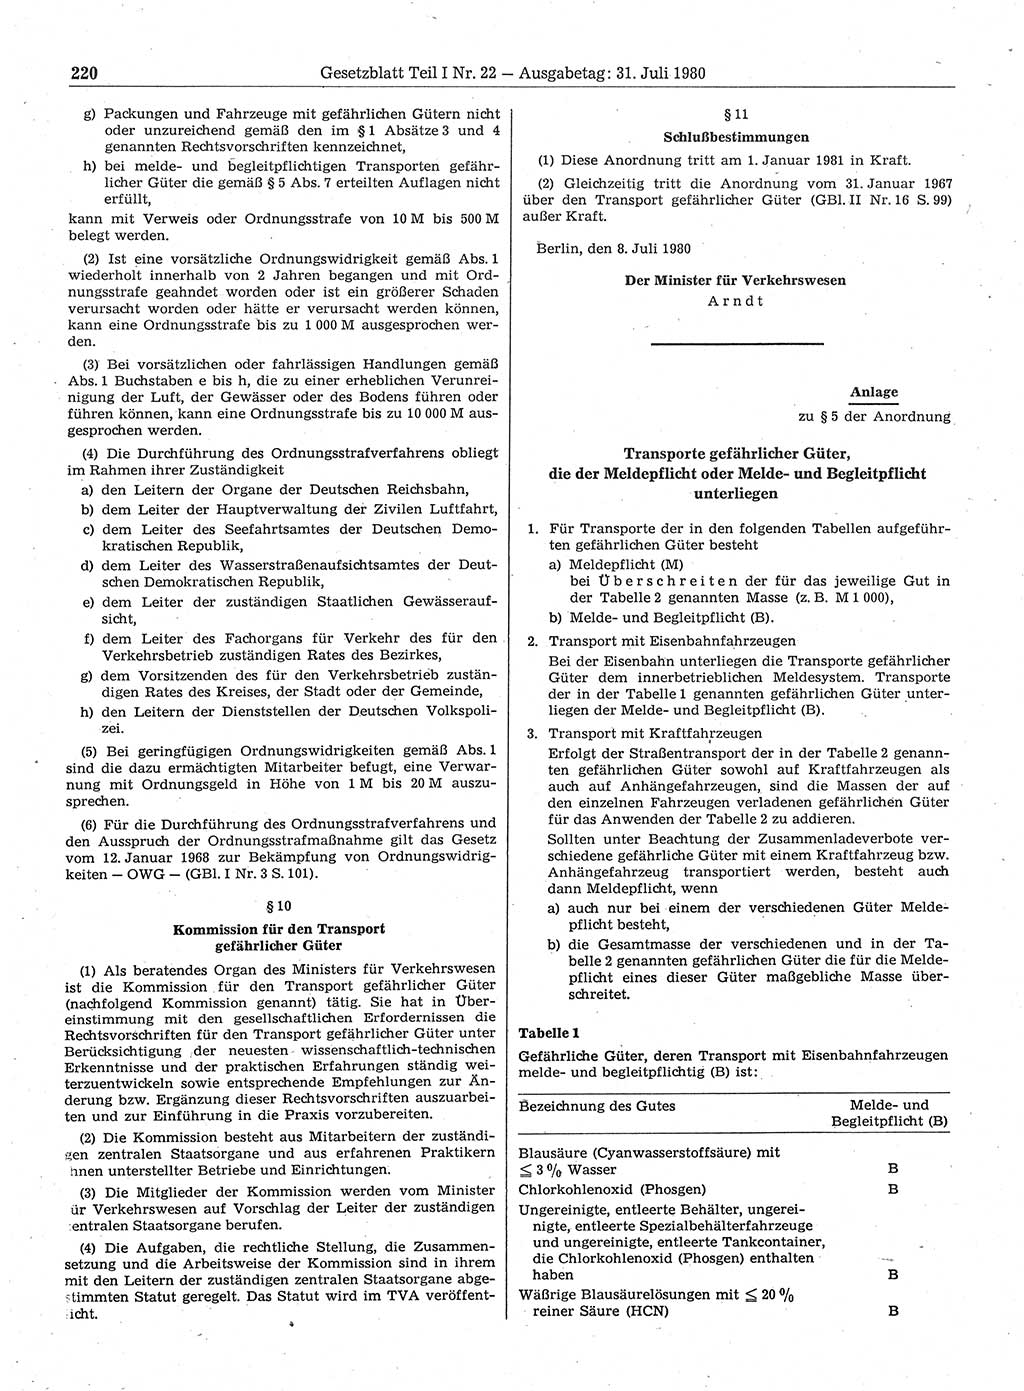 Gesetzblatt (GBl.) der Deutschen Demokratischen Republik (DDR) Teil Ⅰ 1980, Seite 220 (GBl. DDR Ⅰ 1980, S. 220)